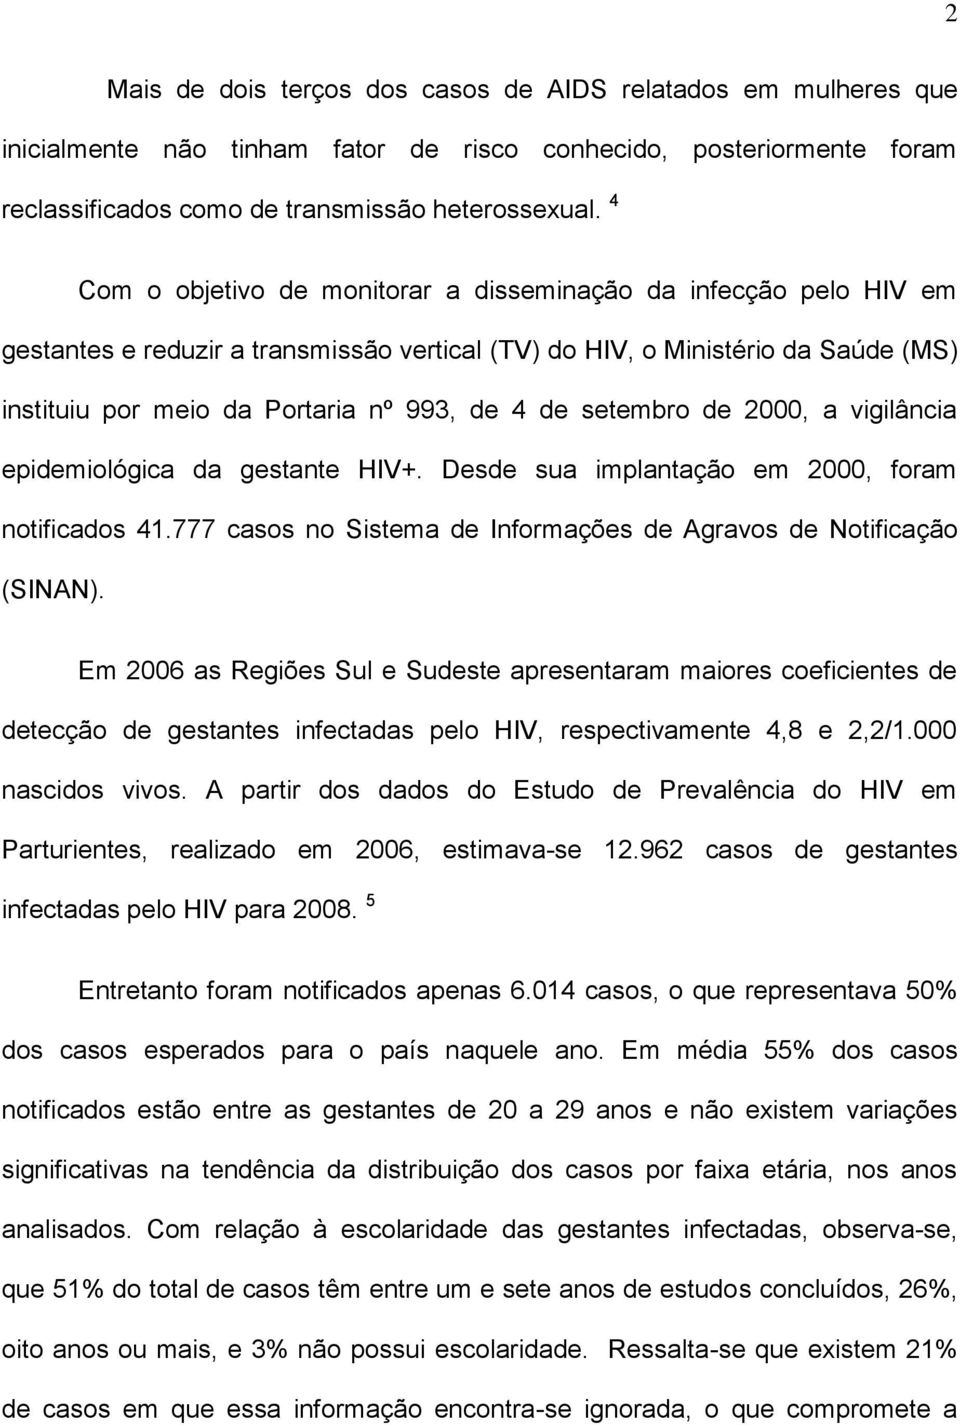 setembro de 2000, a vigilância epidemiológica da gestante HIV+. Desde sua implantação em 2000, foram notificados 41.777 casos no Sistema de Informações de Agravos de Notificação (SINAN).